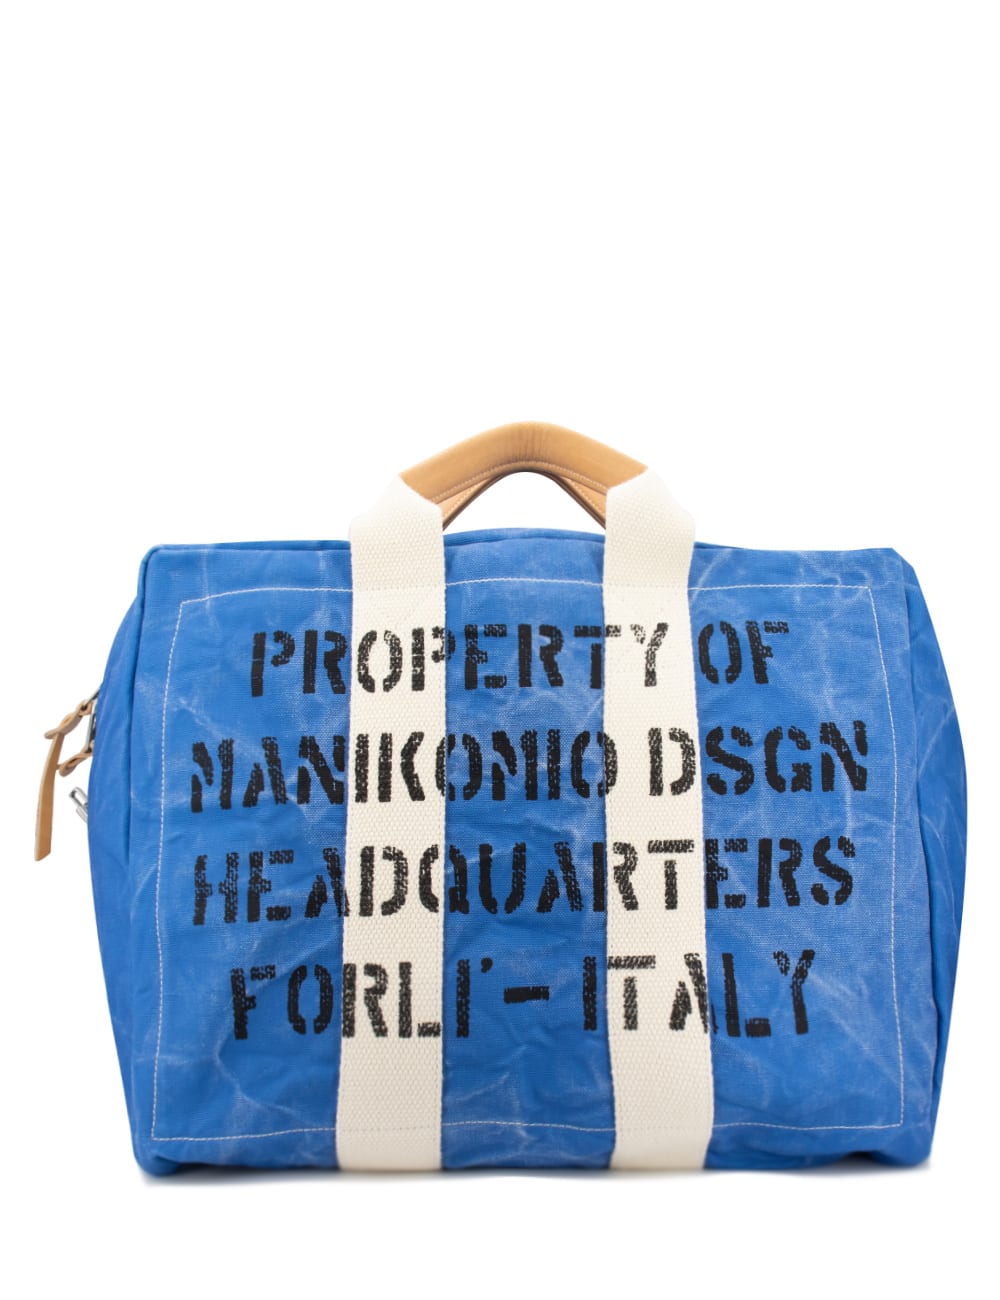 Manikomio Dsgn Bag In Blue